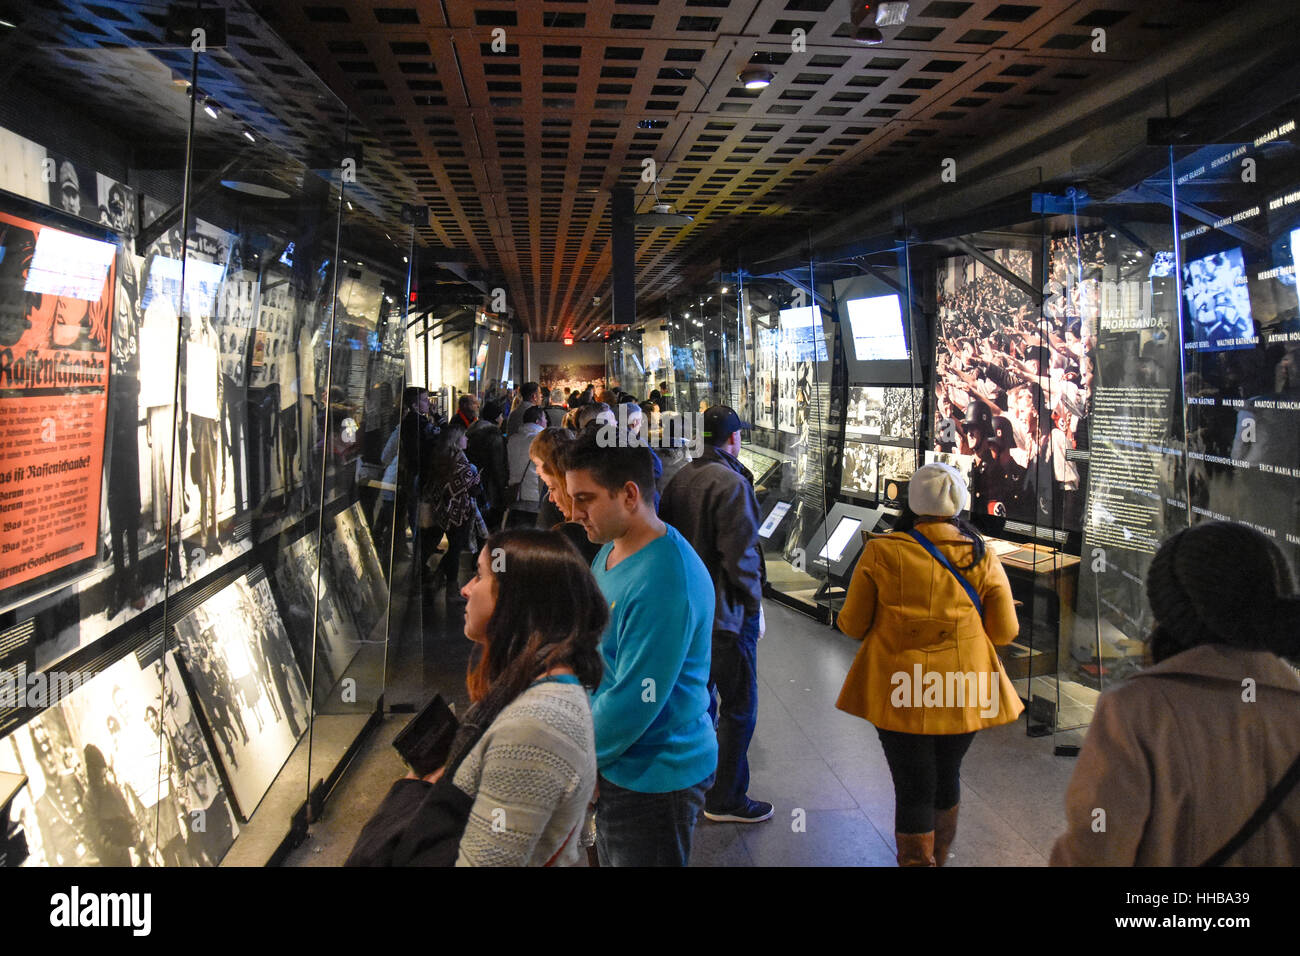 Washington DC, -Innenansicht des Holocaust Memorial Museums. Echte Bilder der Deportierten, Nazi-Propaganda, Krematorium. Stockfoto